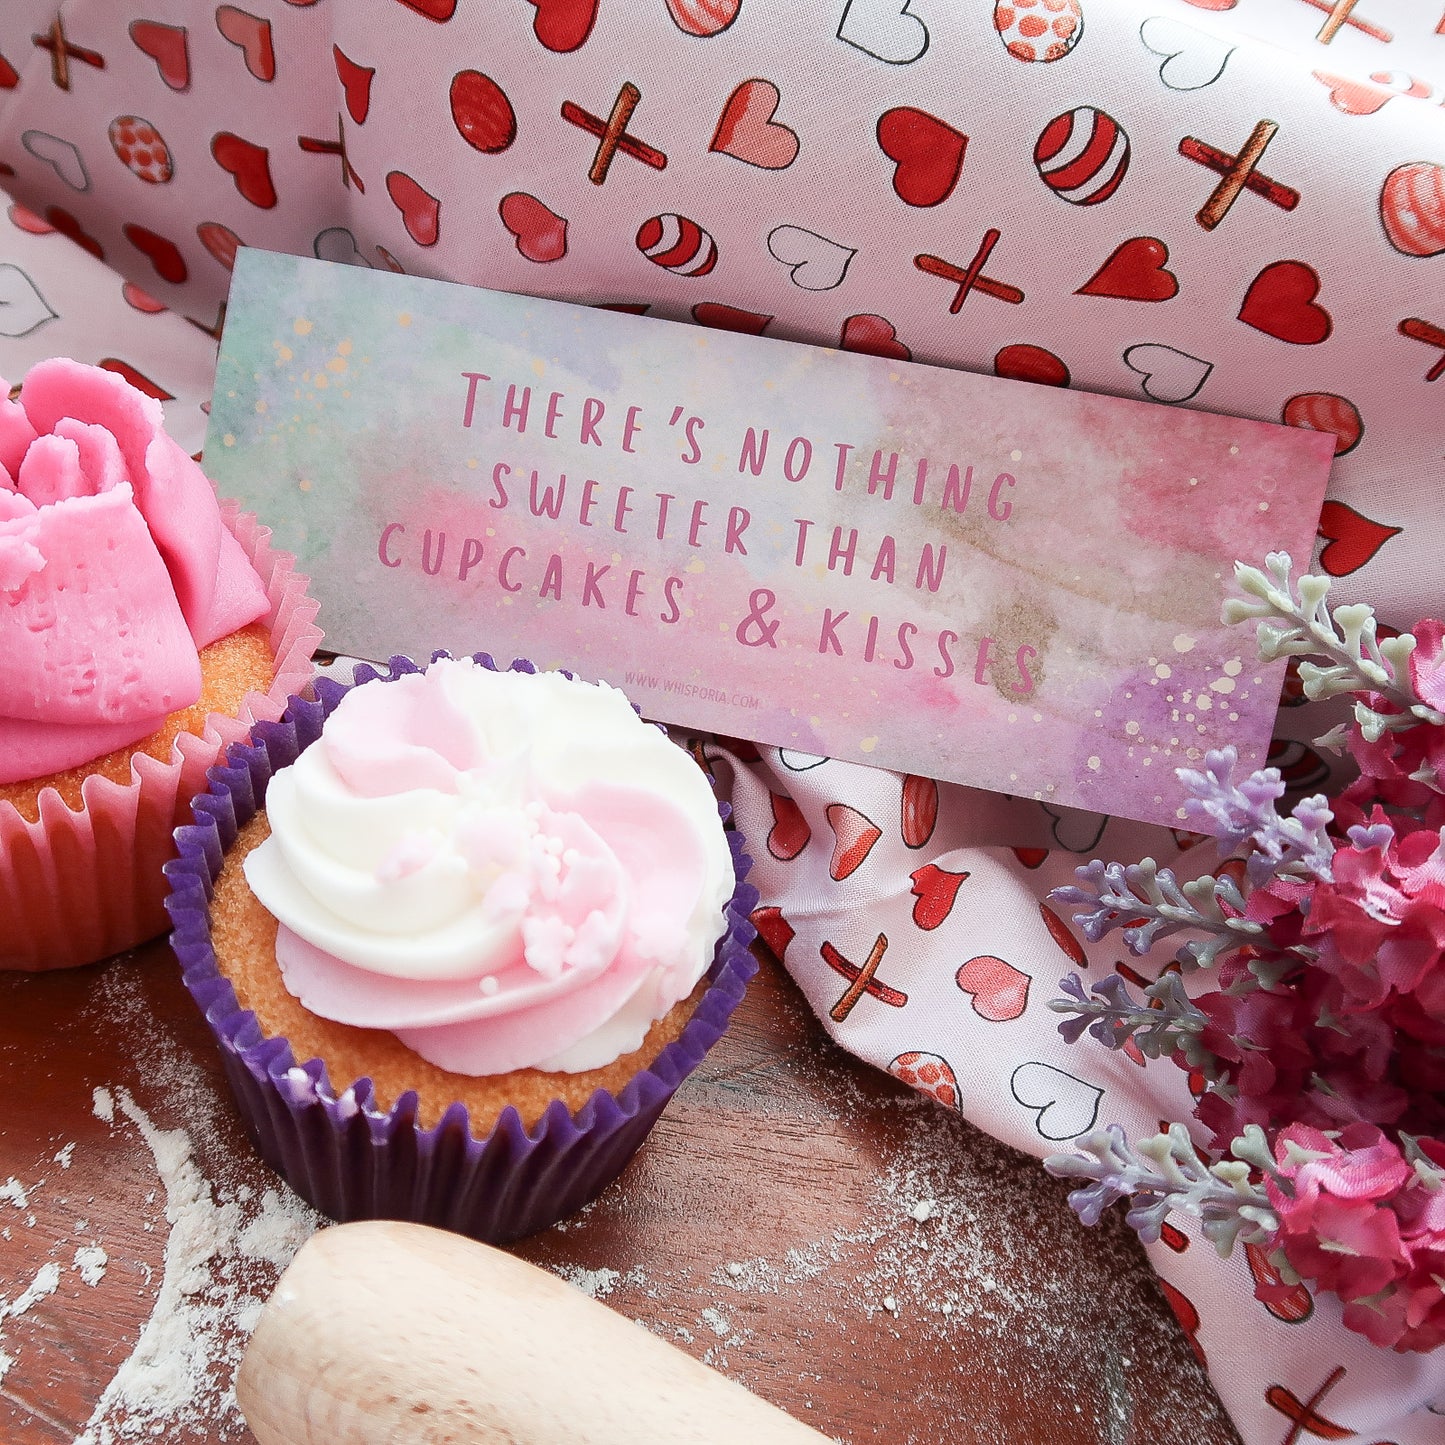 Cupcakes & Kisses Bookmark